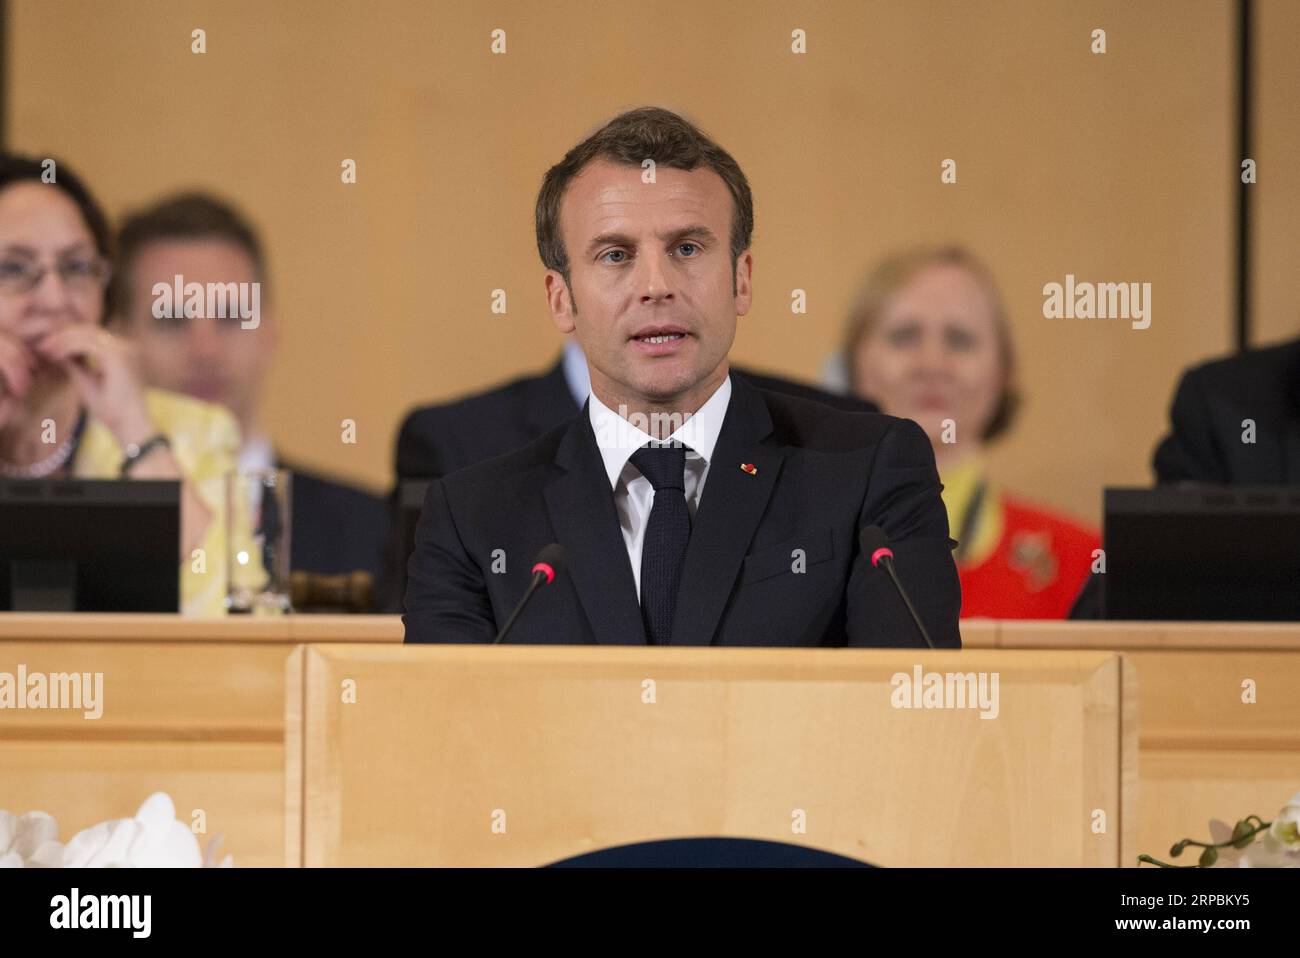 (190611) -- GINEVRA, 11 giugno 2019 (Xinhua) -- il presidente francese Emmanuel Macron tiene un discorso durante la 108a sessione della Conferenza internazionale del lavoro a Ginevra, in Svizzera, 11 giugno 2019. La Conferenza internazionale del lavoro (ILC) annuale dell'Organizzazione internazionale del lavoro (ILO) si svolge dal 10 al 21 giugno, in occasione del 100° anniversario dell'organizzazione a Ginevra. (Xinhua/Xu Jinquan) SVIZZERA-GINEVRA-CONFERENZA INTERNAZIONALE DEL LAVORO PUBLICATIONxNOTxINxCHN Foto Stock